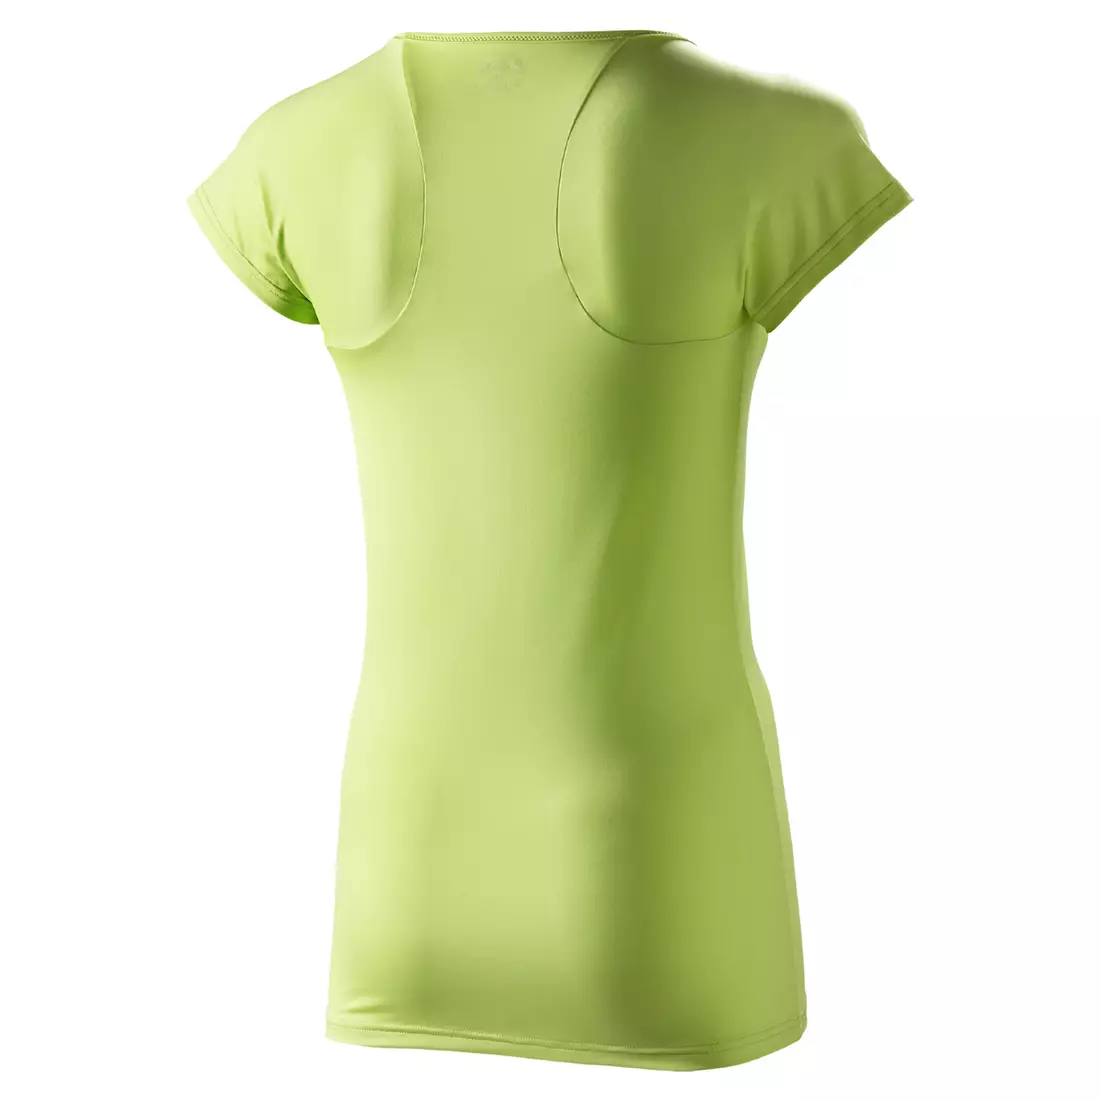 ASICS 110590-0423 PERFORMANCE TEE - tricou pentru alergare pentru femei, culoare: Verde